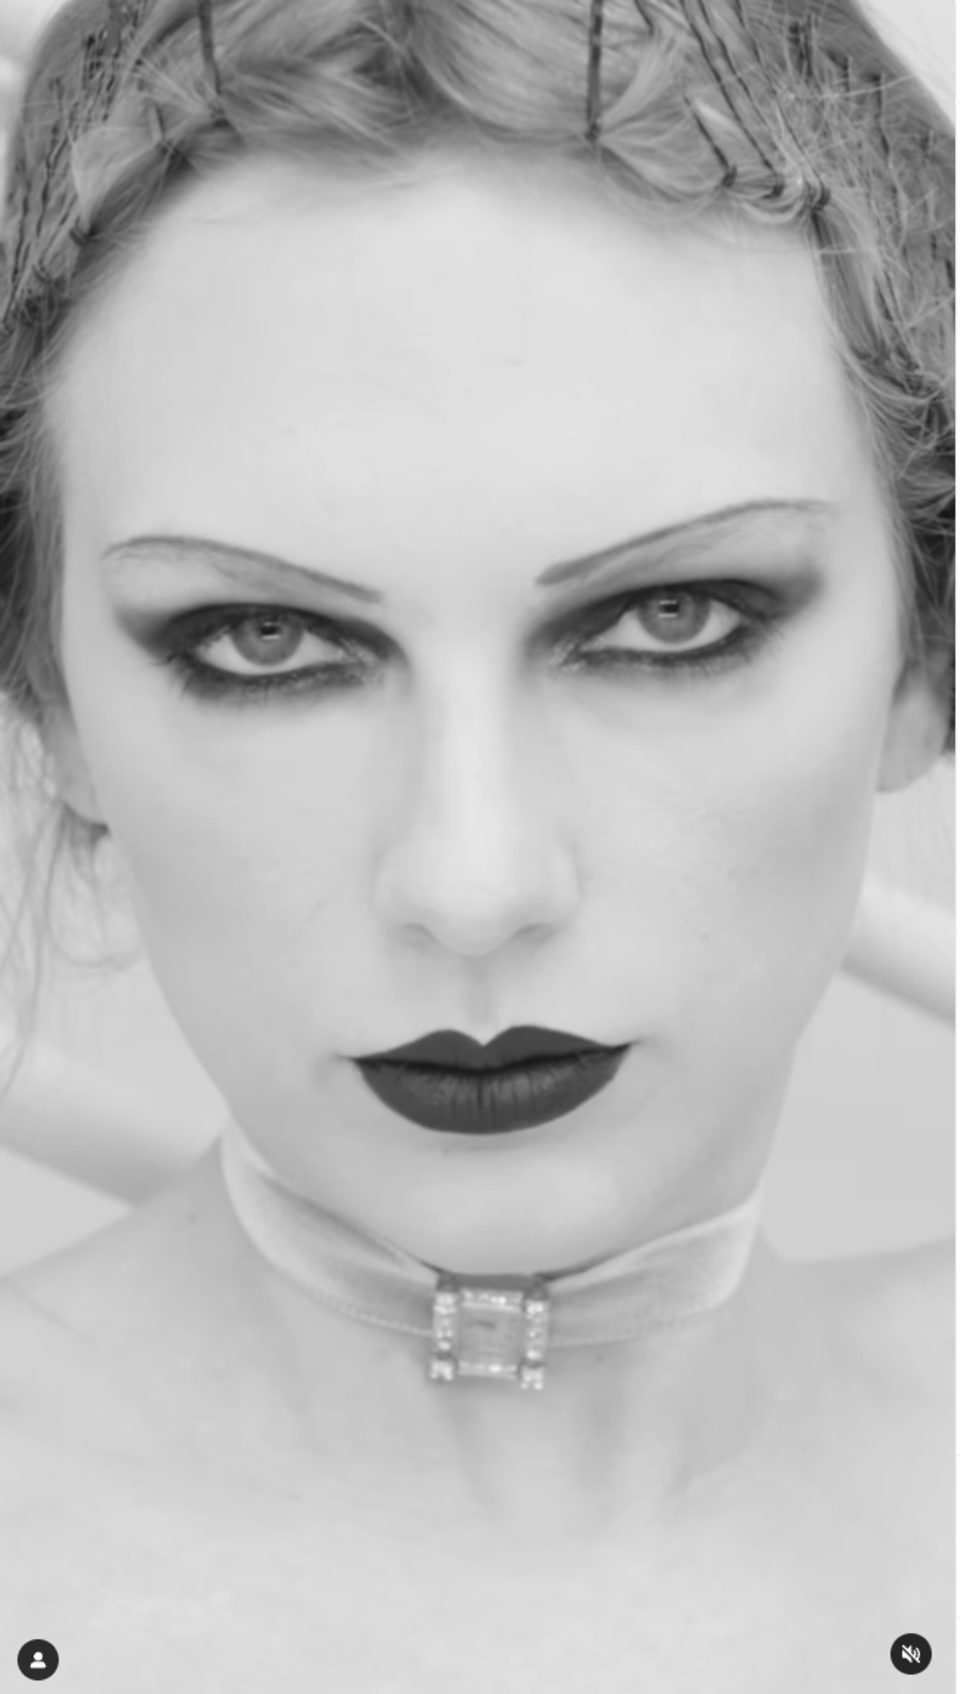 In ihrem neuen Musikvideo "Fortnight" zeigt sich Taylor Swift in einem von Clara Bow inspiriertem Make-up. 